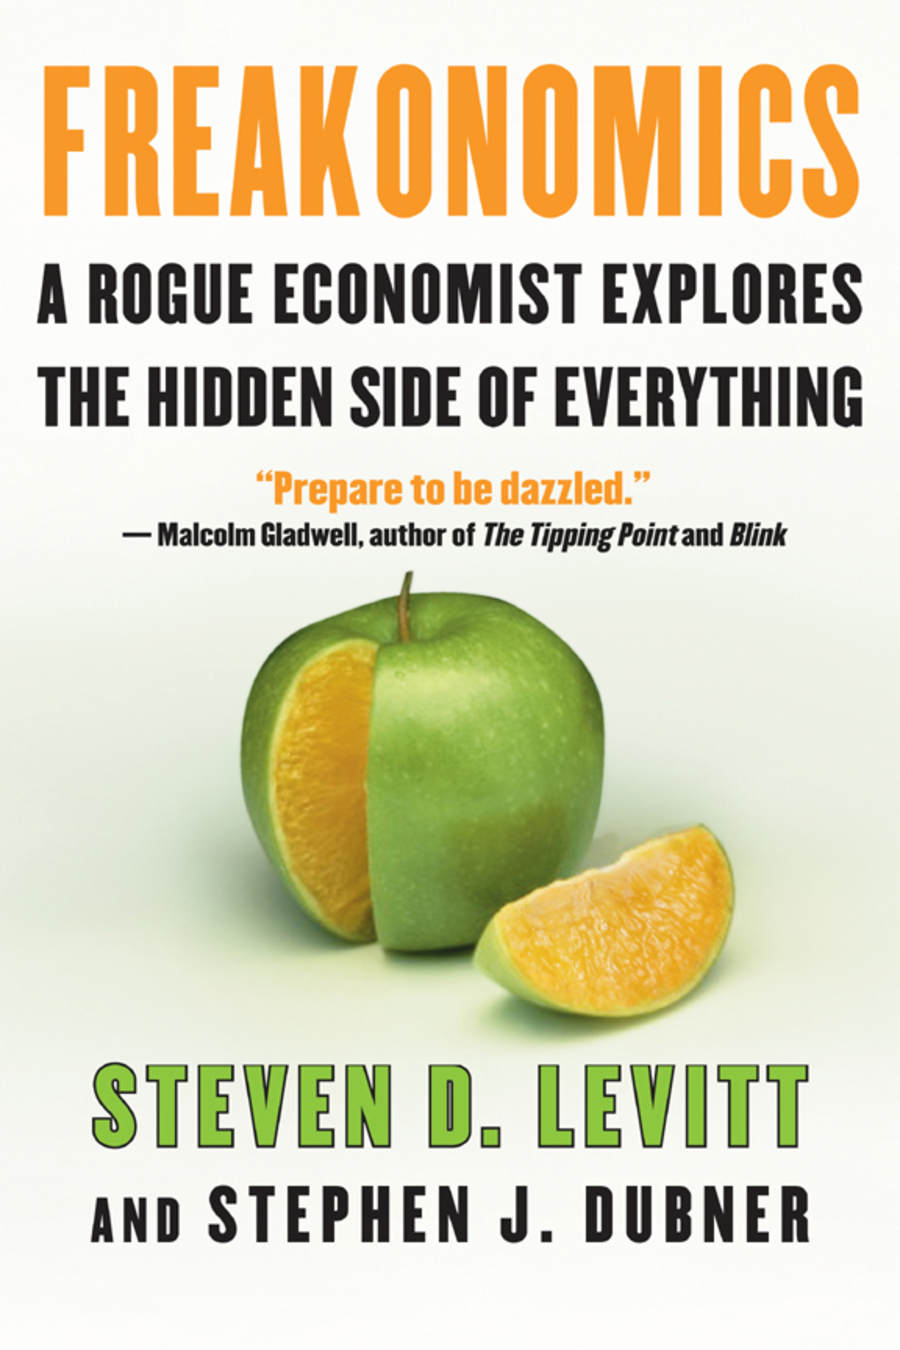 Freakonomics – Steven D. Levit and Stephen J. Dubner